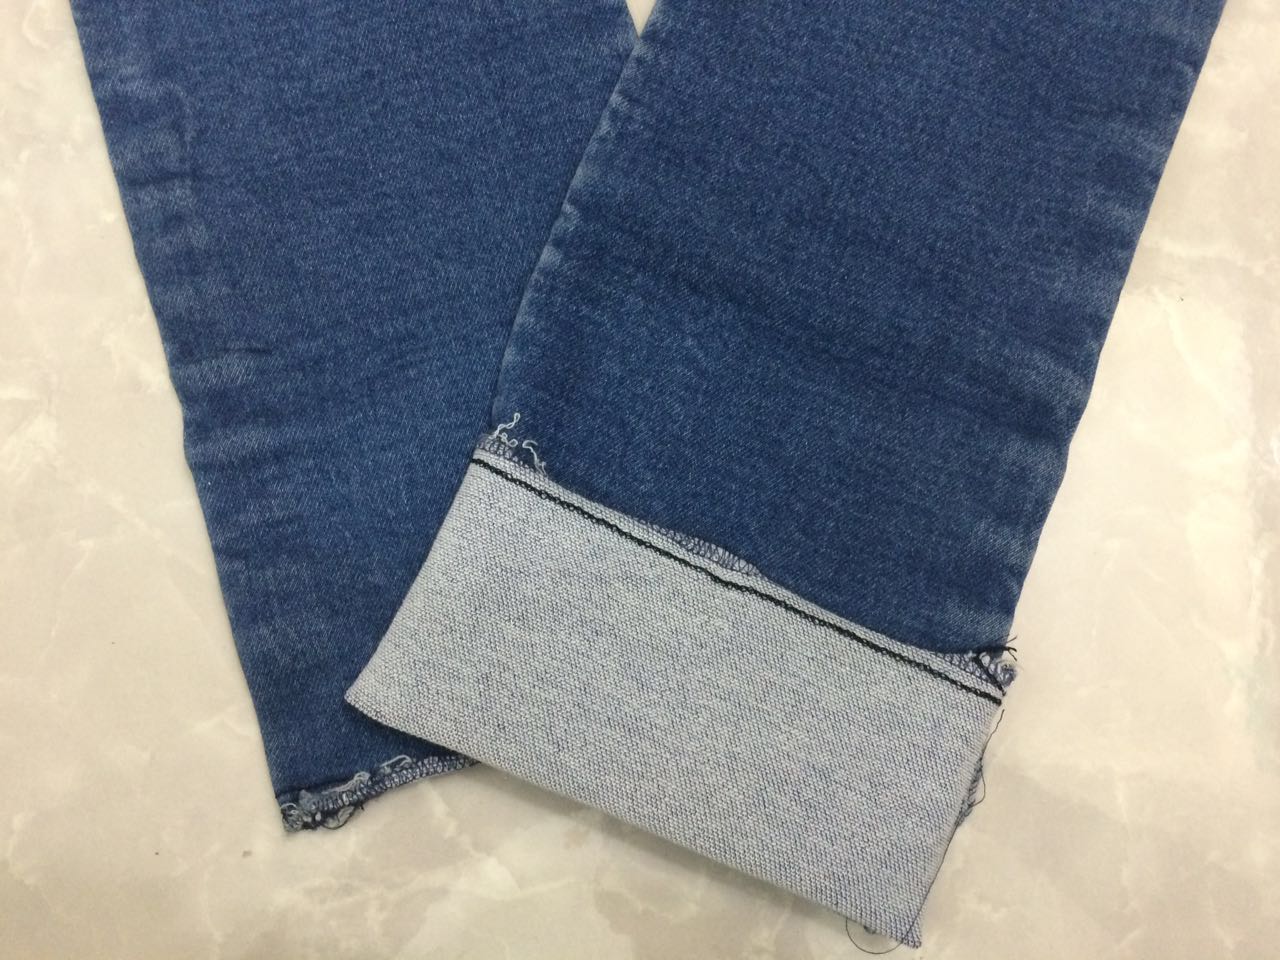 vải jean cotton giá rẻ khổ 1m6 , đa dạng mẫu mã phong phú - 6